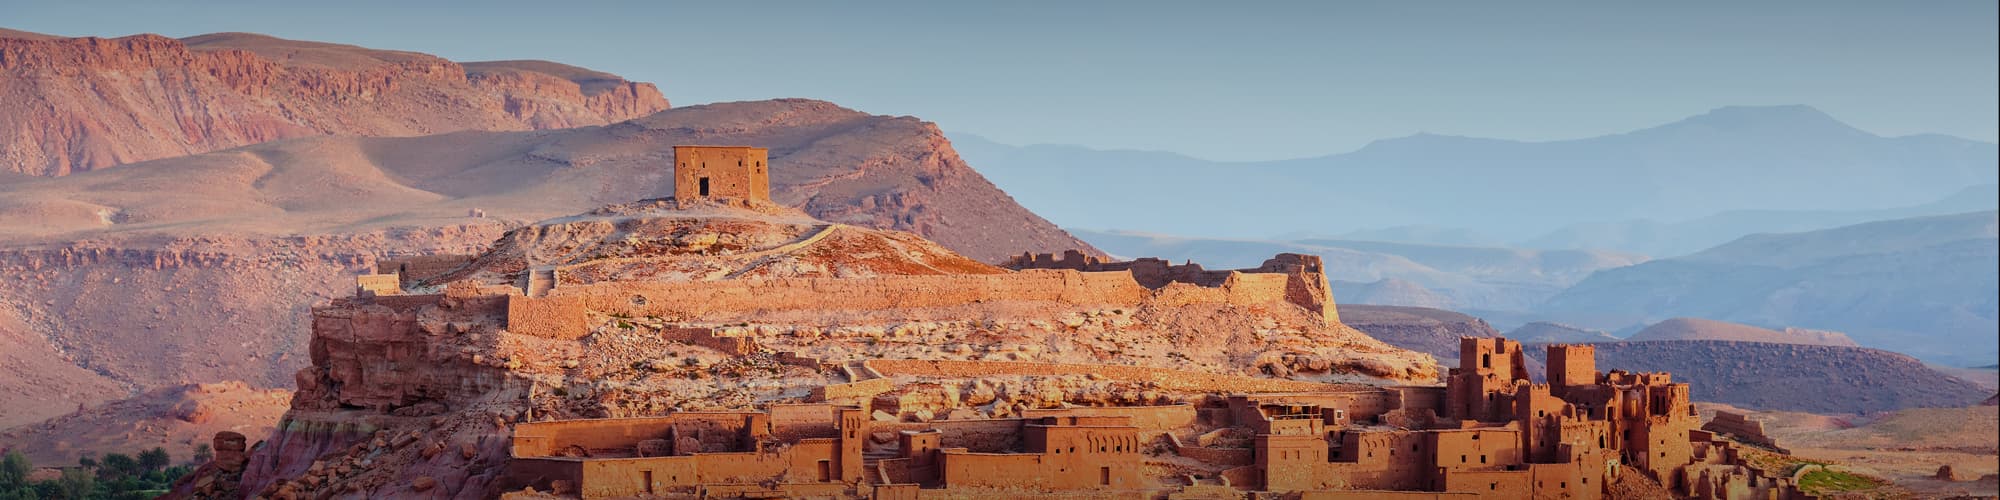 Voyages en liberté au Maroc